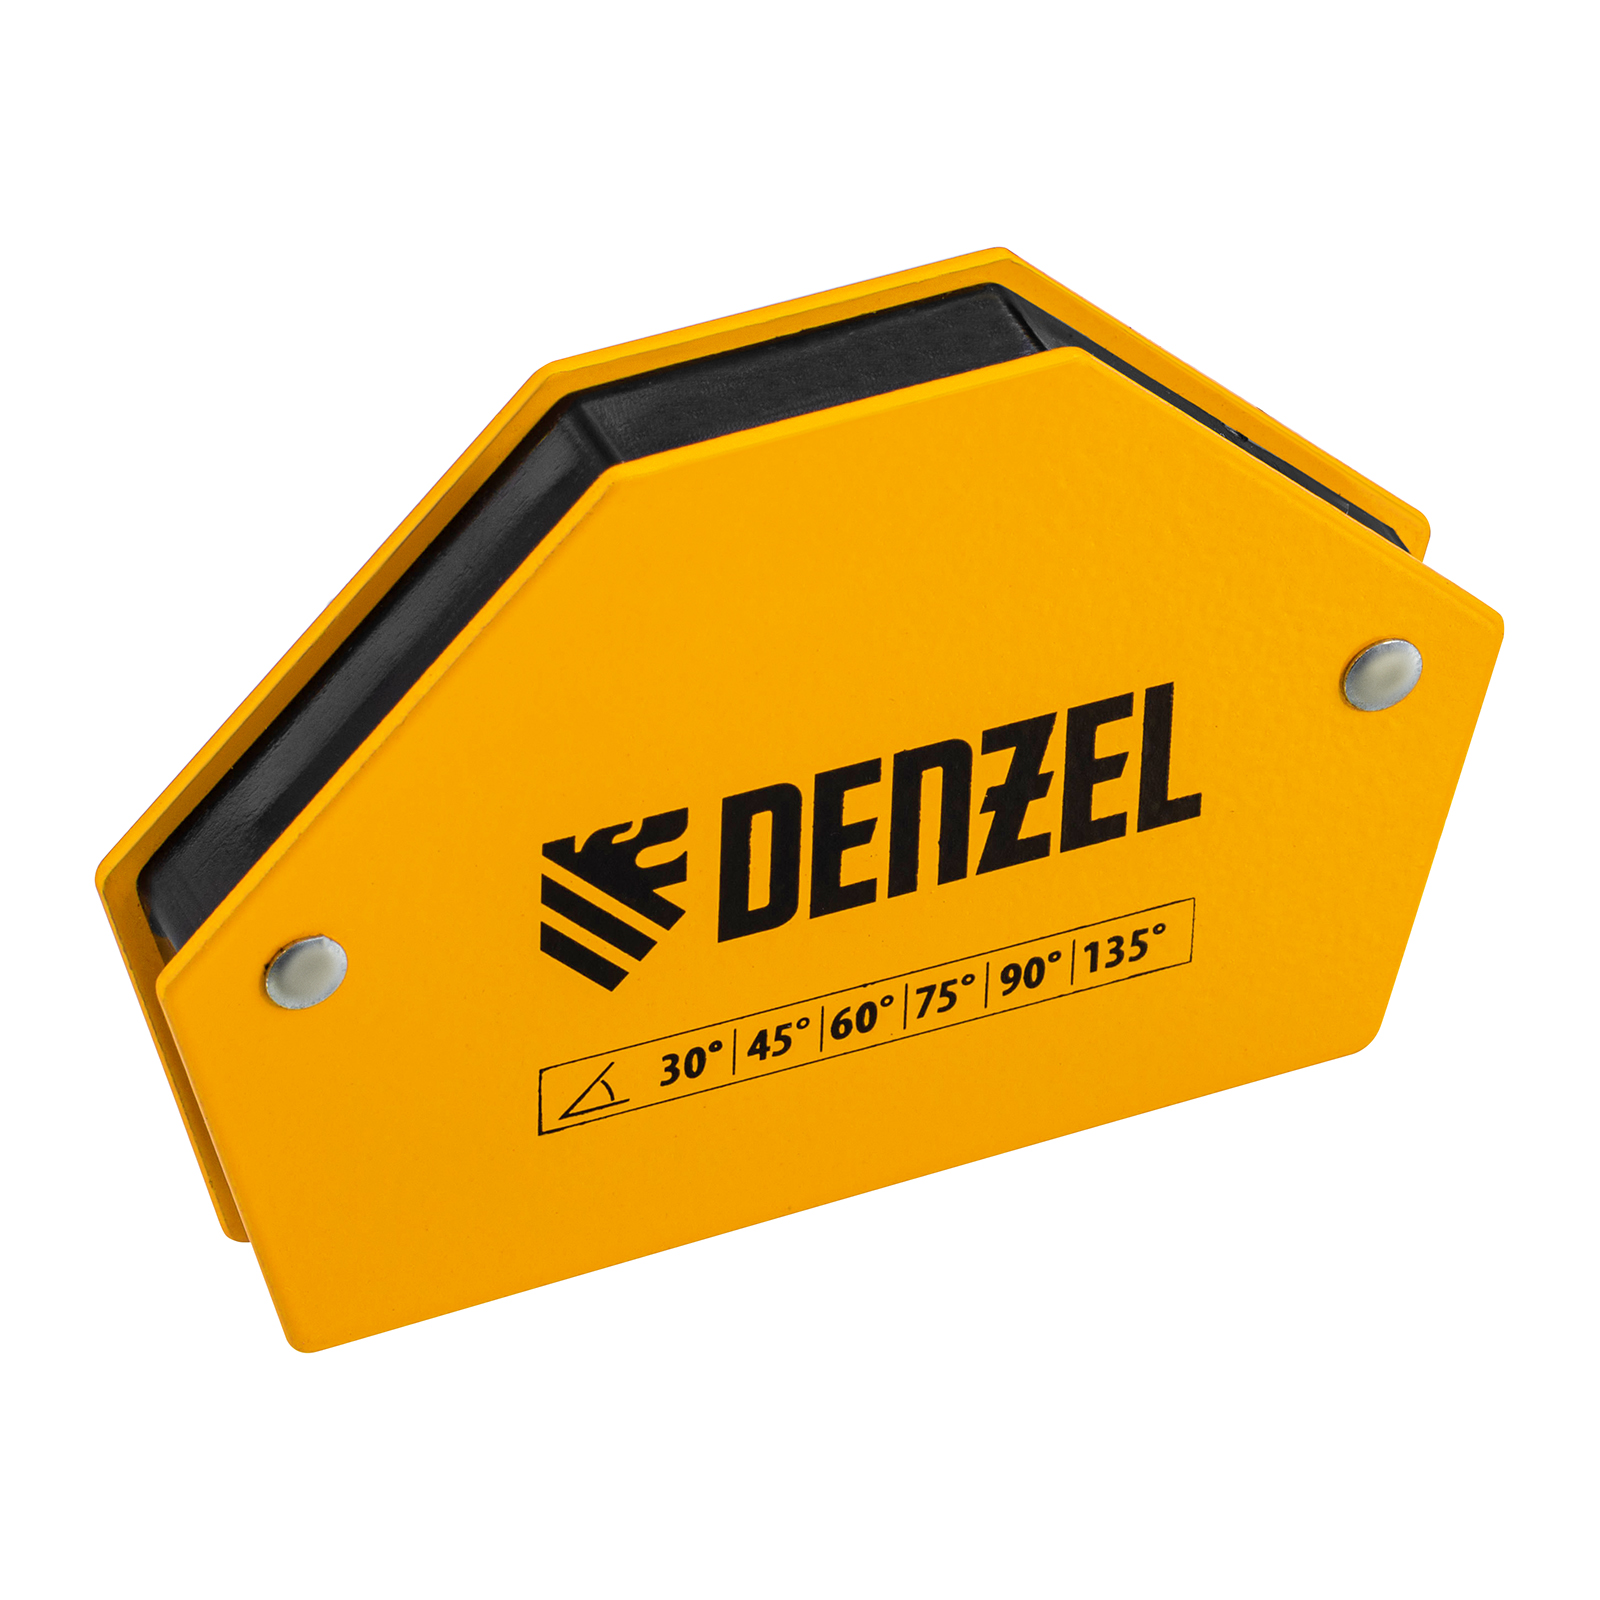 Фиксатор магнитный для сварочных работ DENZEL усилие 25 LB, 30х45х60х75х90х135 град. 97552 фиксатор магнитный отключаемый для сварочных работ denzel усилие 30 lb 45х90х135 гр 97563